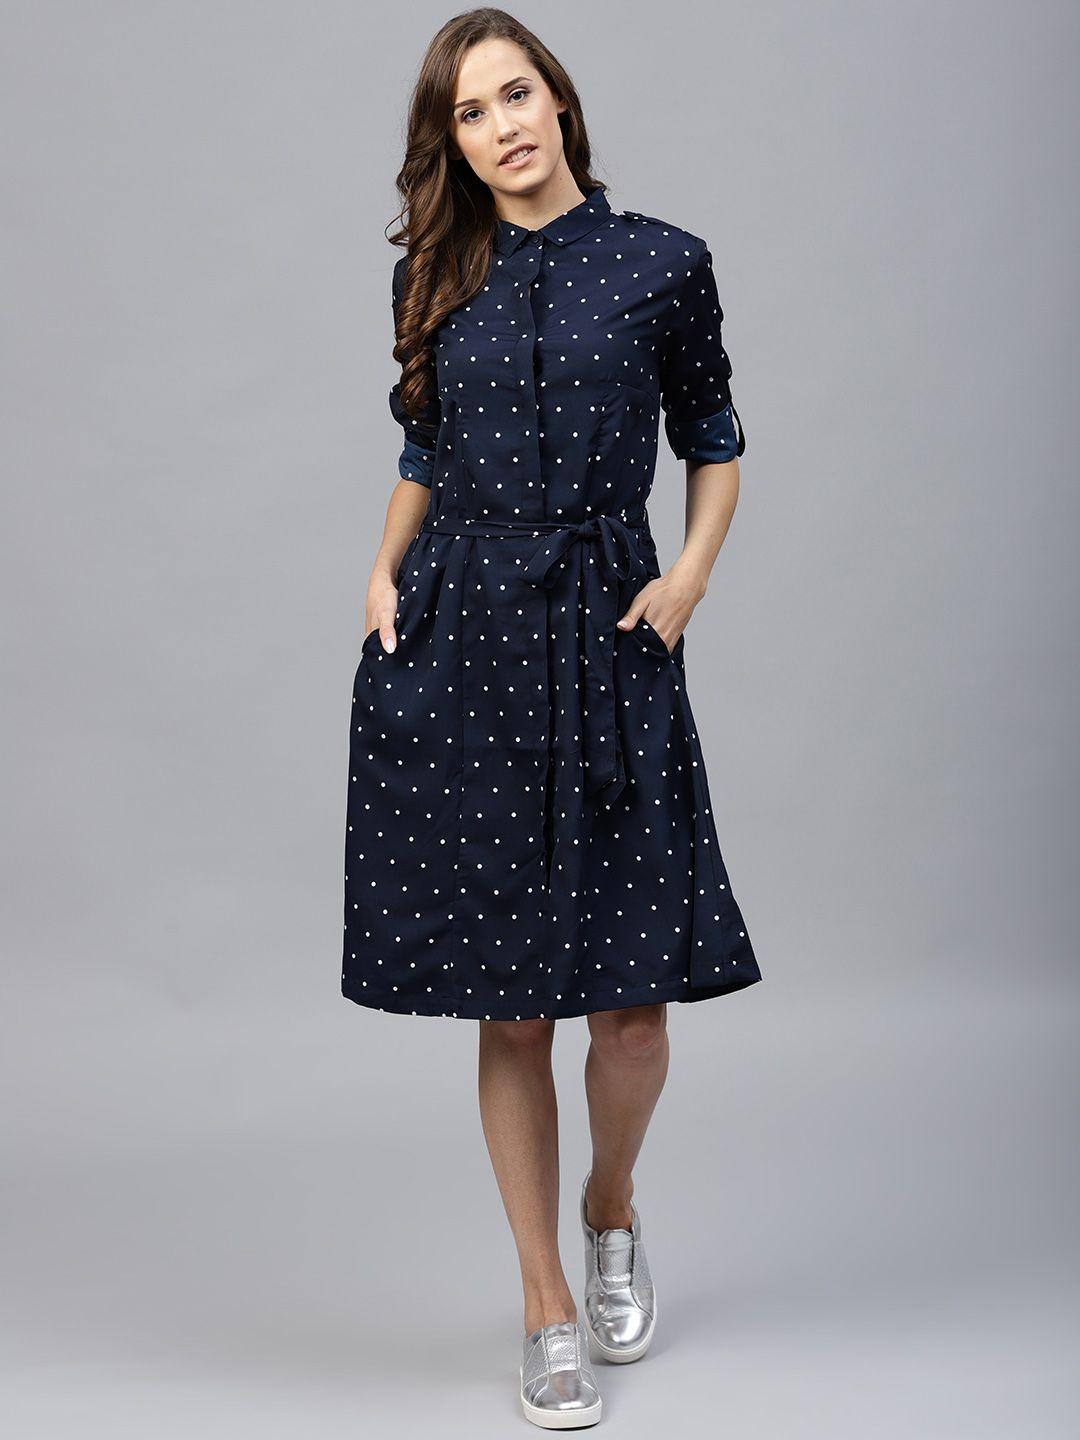 tokyo talkies navy blue polka dots printed shirt dress